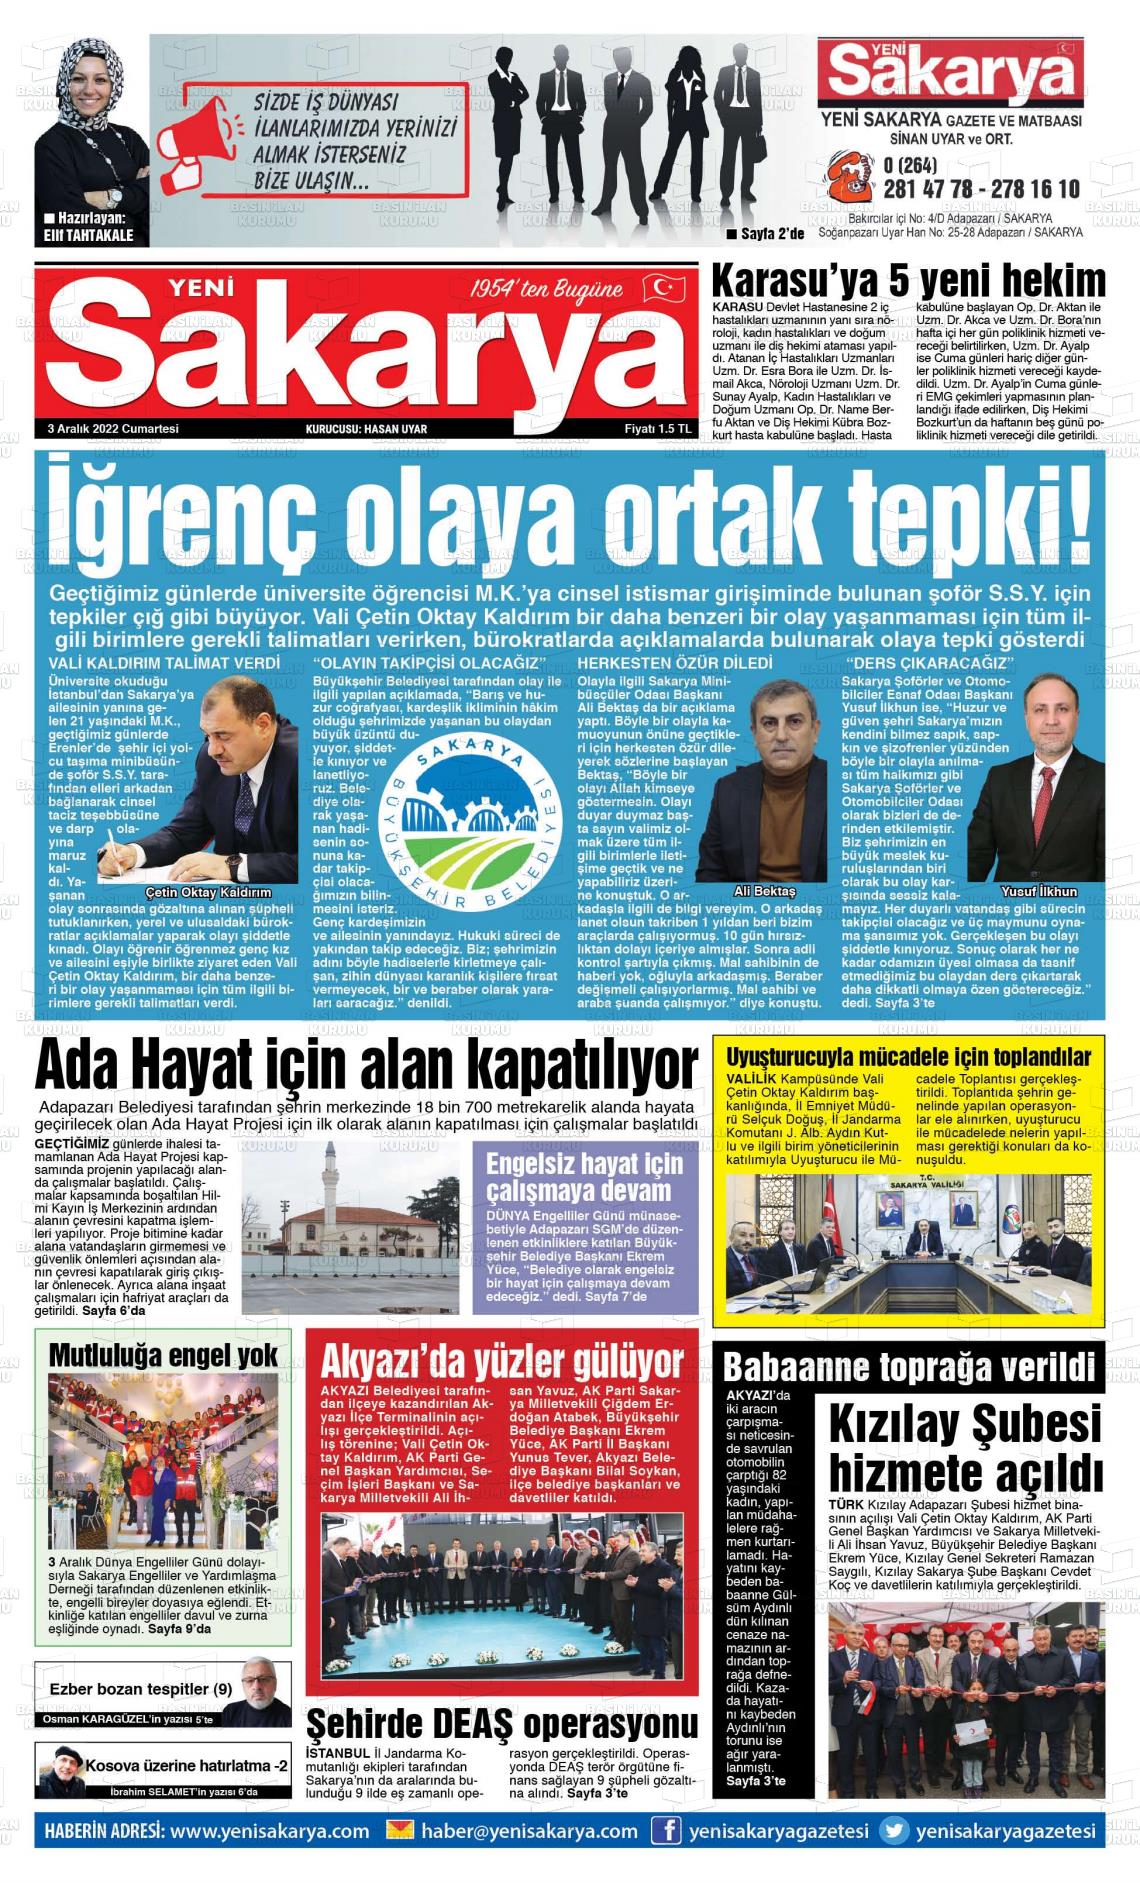 03 Aralık 2022 Yeni Sakarya Gazete Manşeti